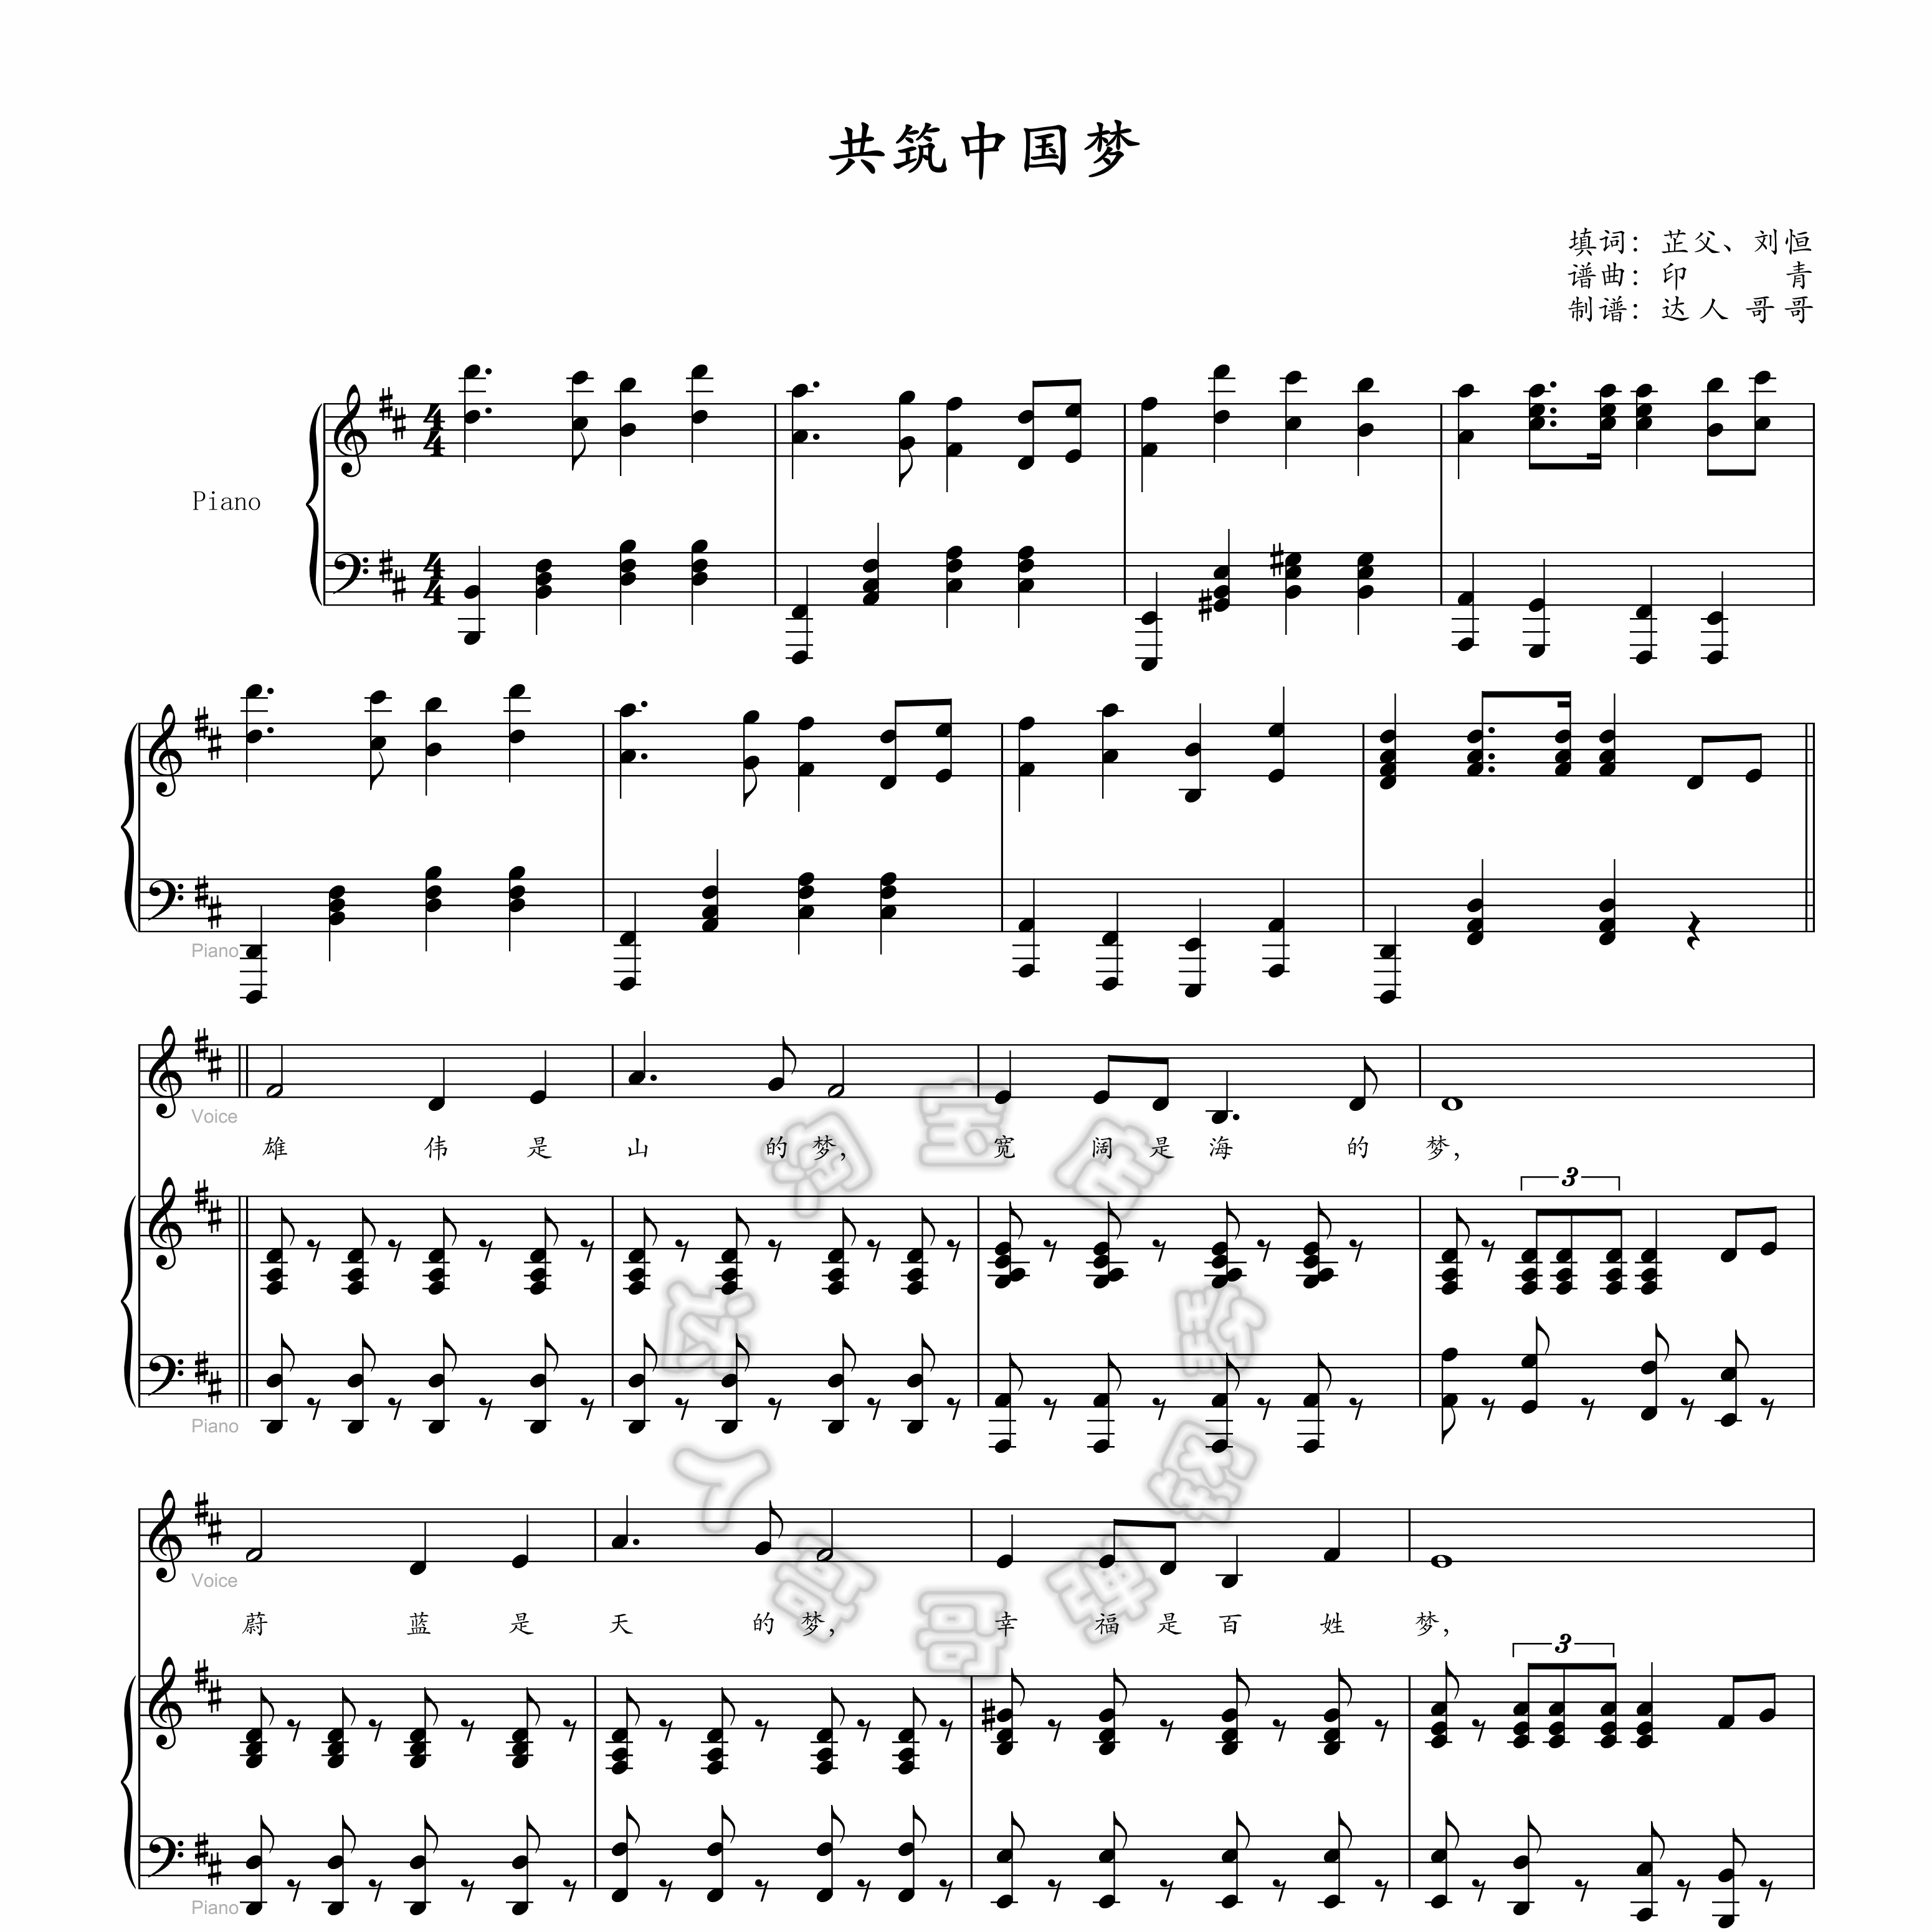 共筑中国梦钢琴谱 可移调 合唱伴奏 2页免翻 超清原版 爱国歌曲